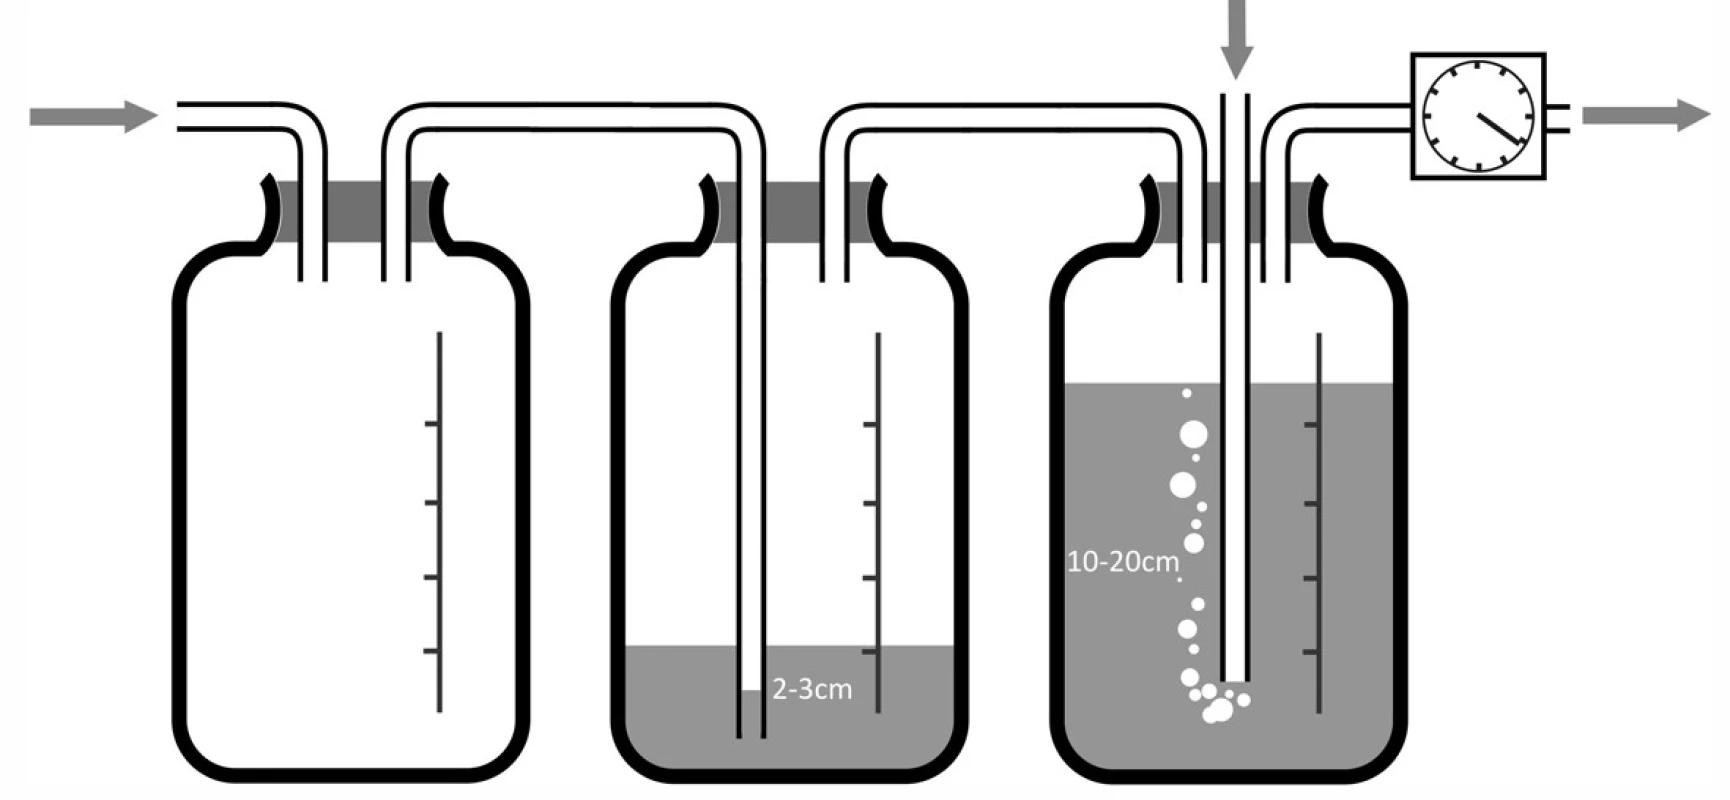 Vícelahvový systém pro hrudní sání a) dvoulahvový systém; b) třílahvový systém.
Fig. 5: Multi-bottle system for chest suction a) two-bottle system ;b) three-bottle system.